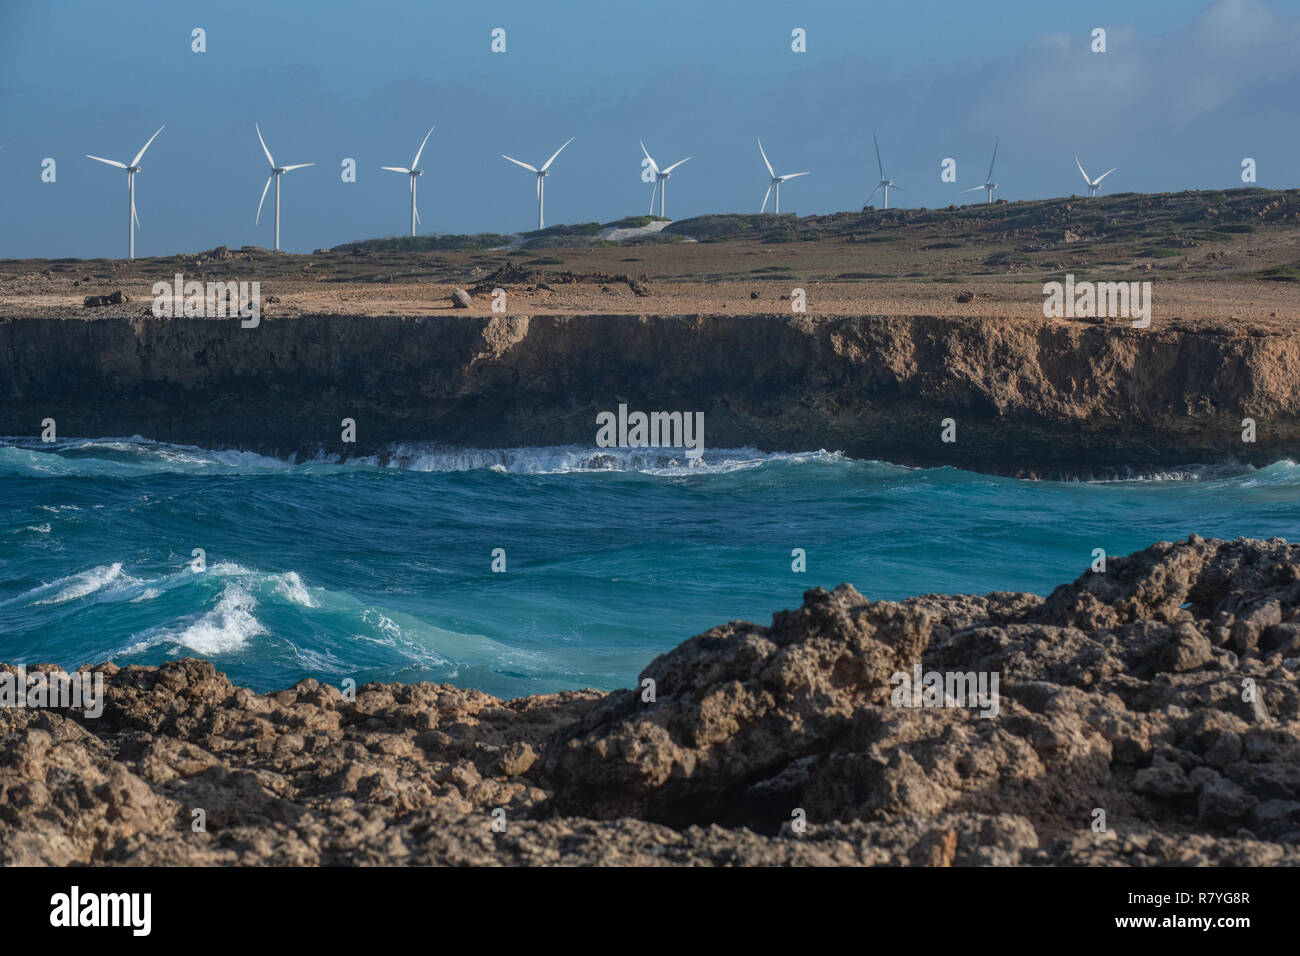 Nachhaltigkeit Windmill Farm Aruba in "Arikok" Nationalpark - Aufwand aus Windkraft - Windkraftanlagen Form eines Windparks erneuerbare Energien zu erhöhen. Stockfoto